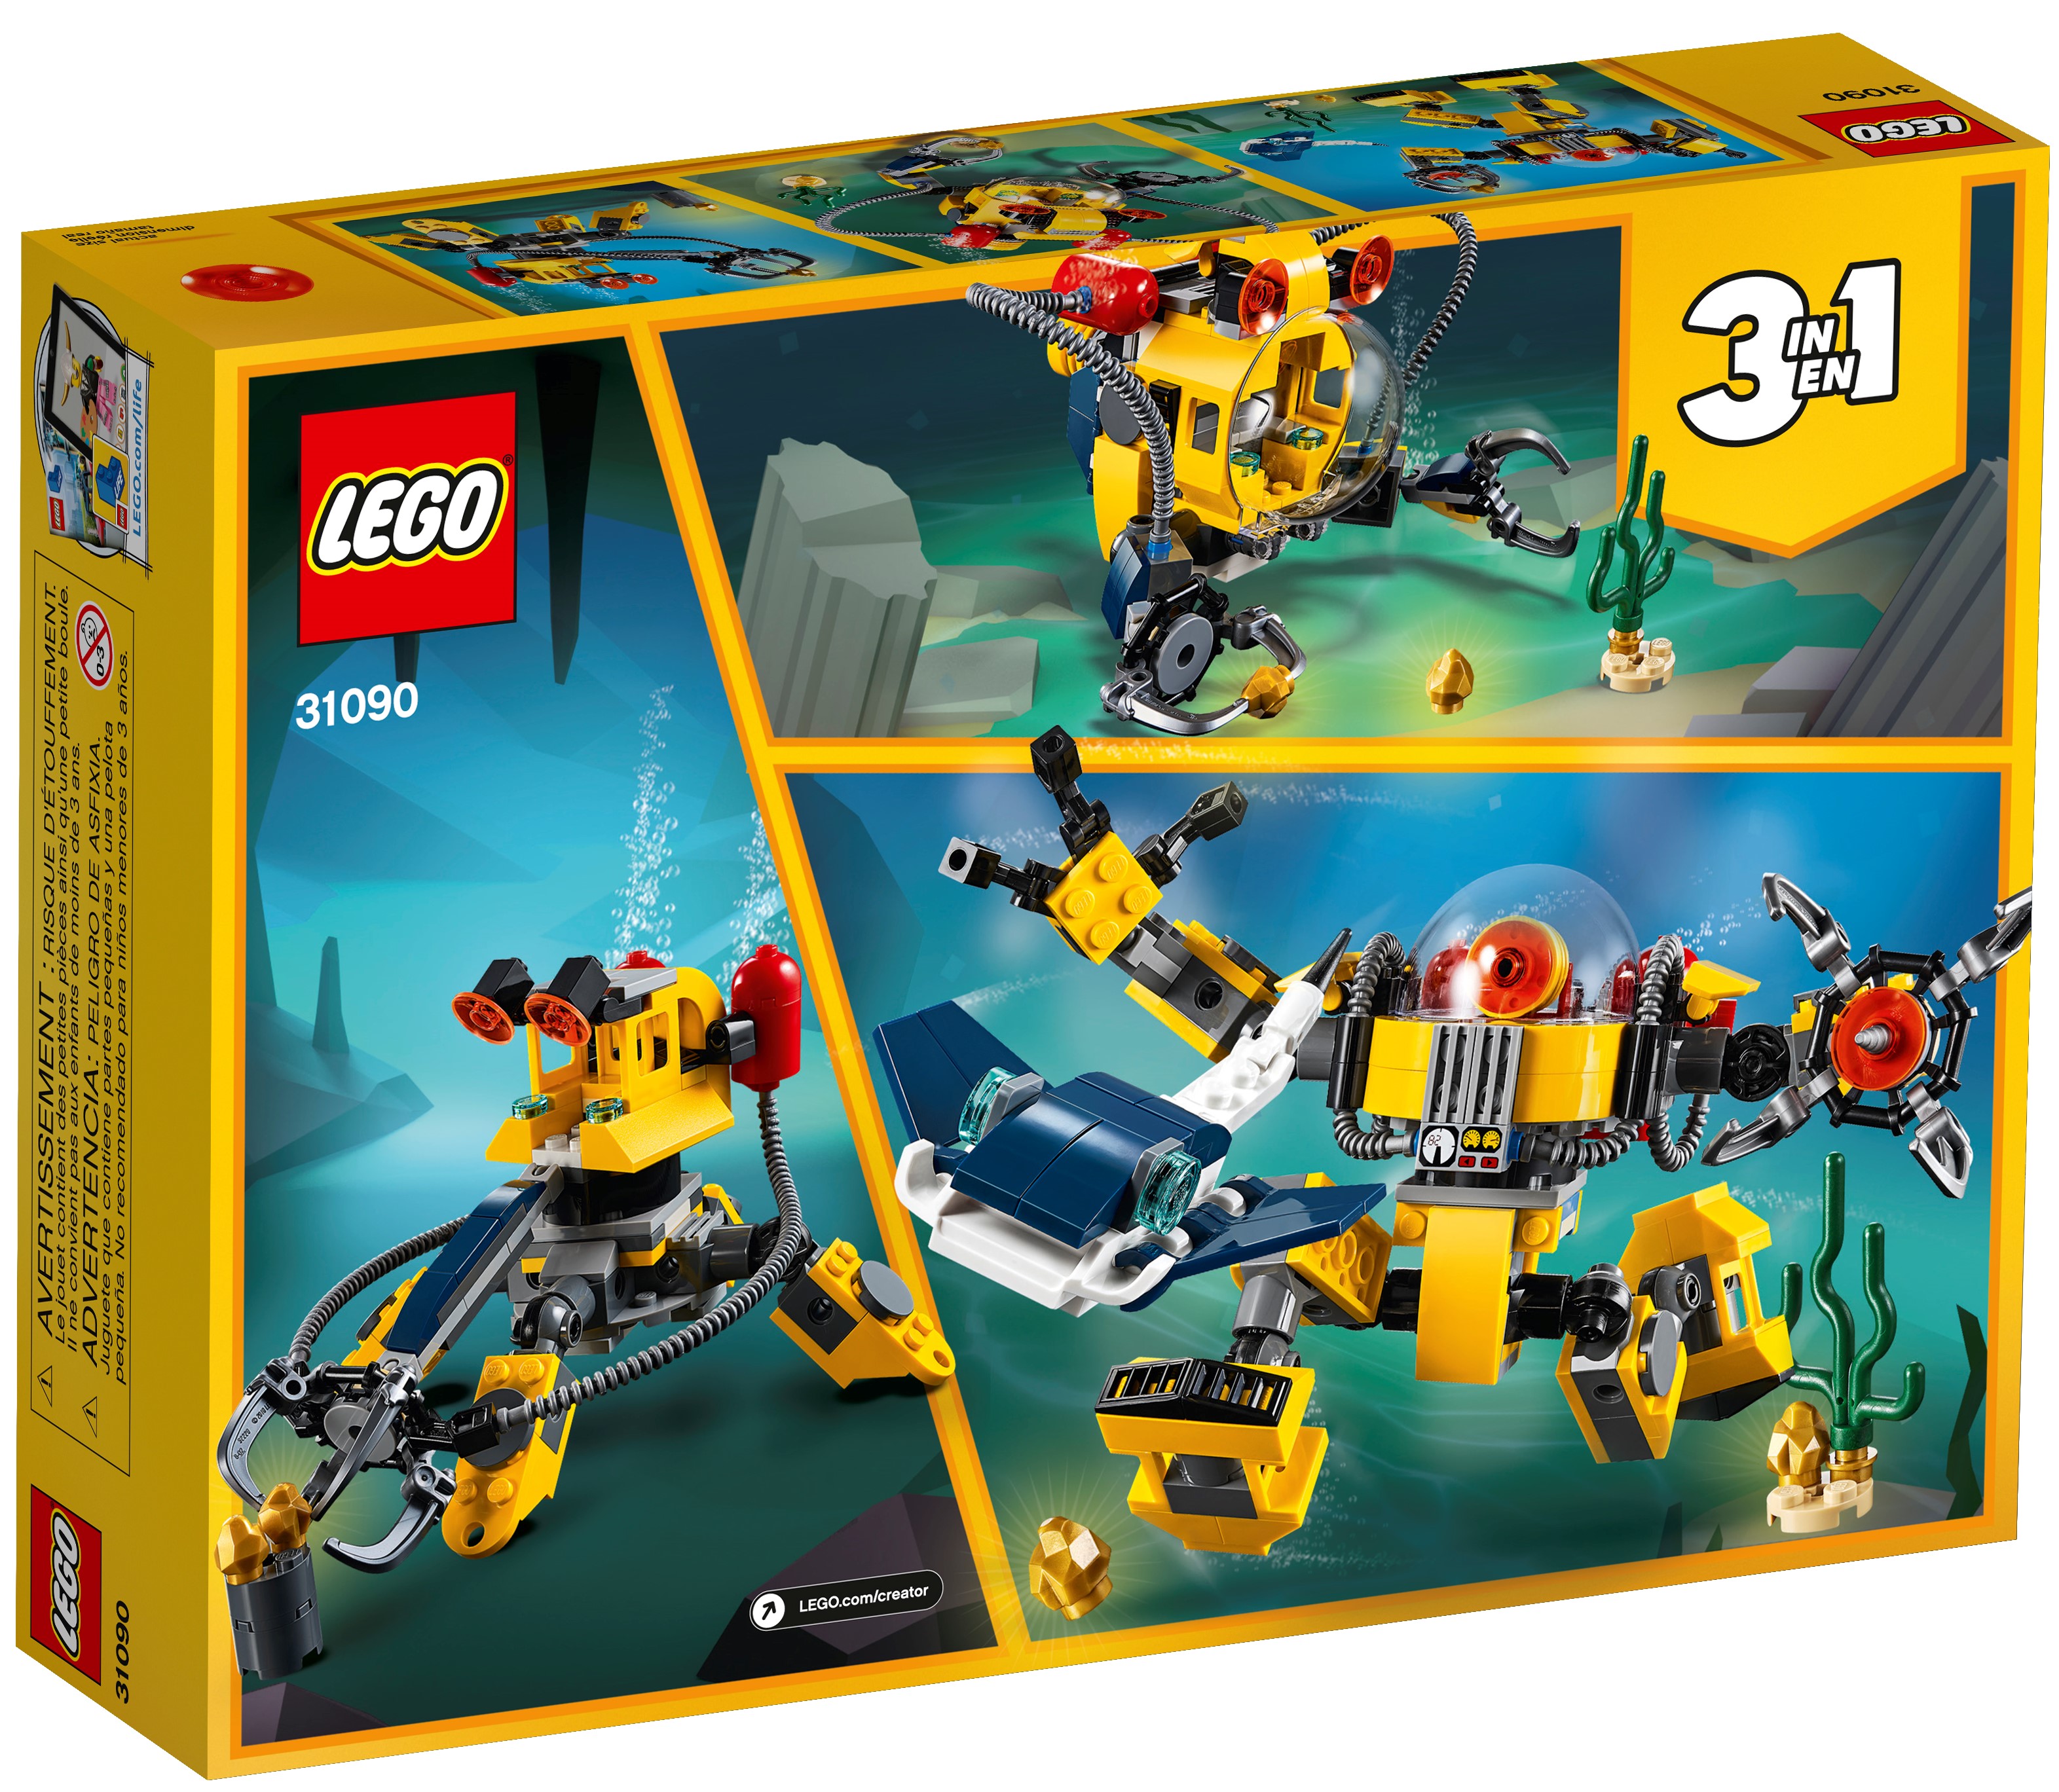 bl8 LEGO CREATOR 3IN1 31090 ROBOT SOTTOMARINO SET DI COSTRUZIONI PER COSTRUIRE 